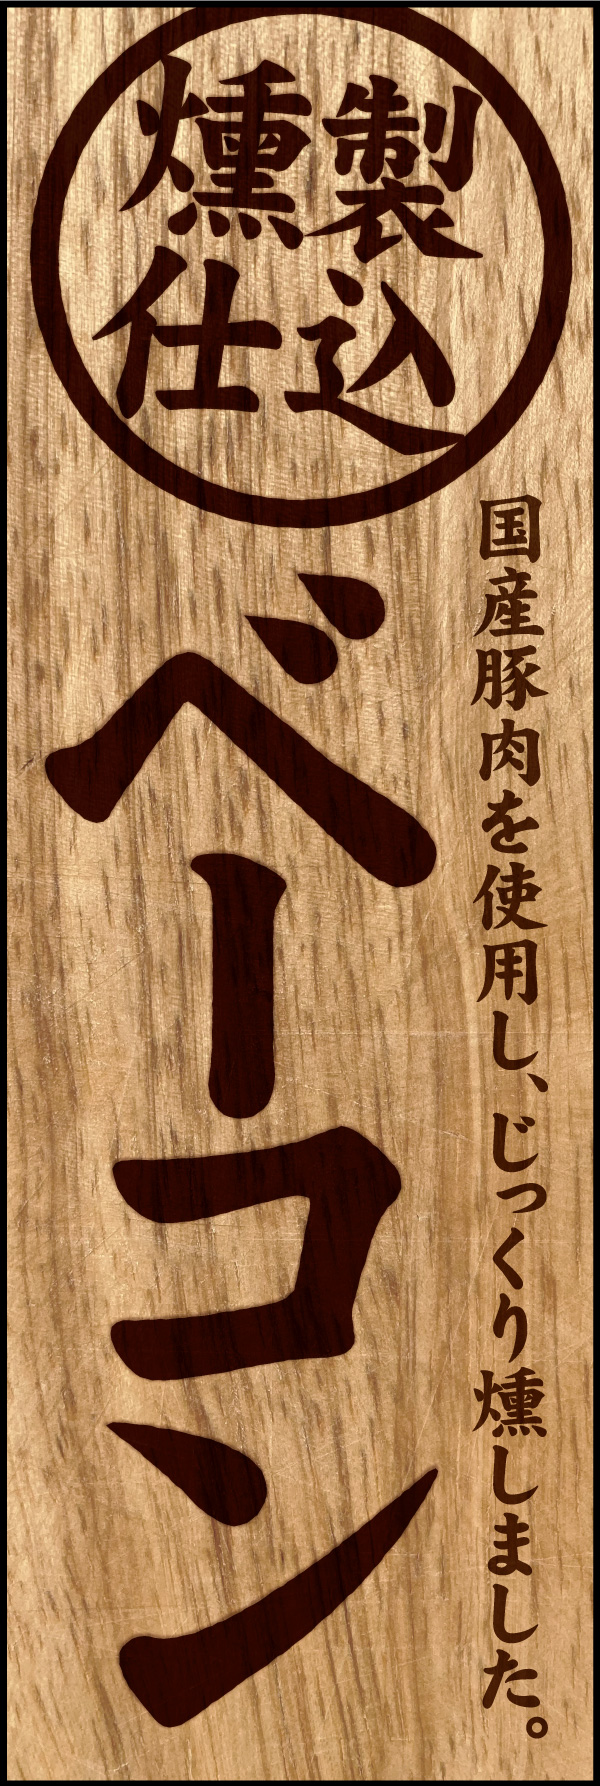 ベーコン 01 「ベーコン」ののぼりです。木材に焼印された文字をモチーフに、じっくり燻製された手作りベーコンをイメージしてデザインしました。(Y.M)